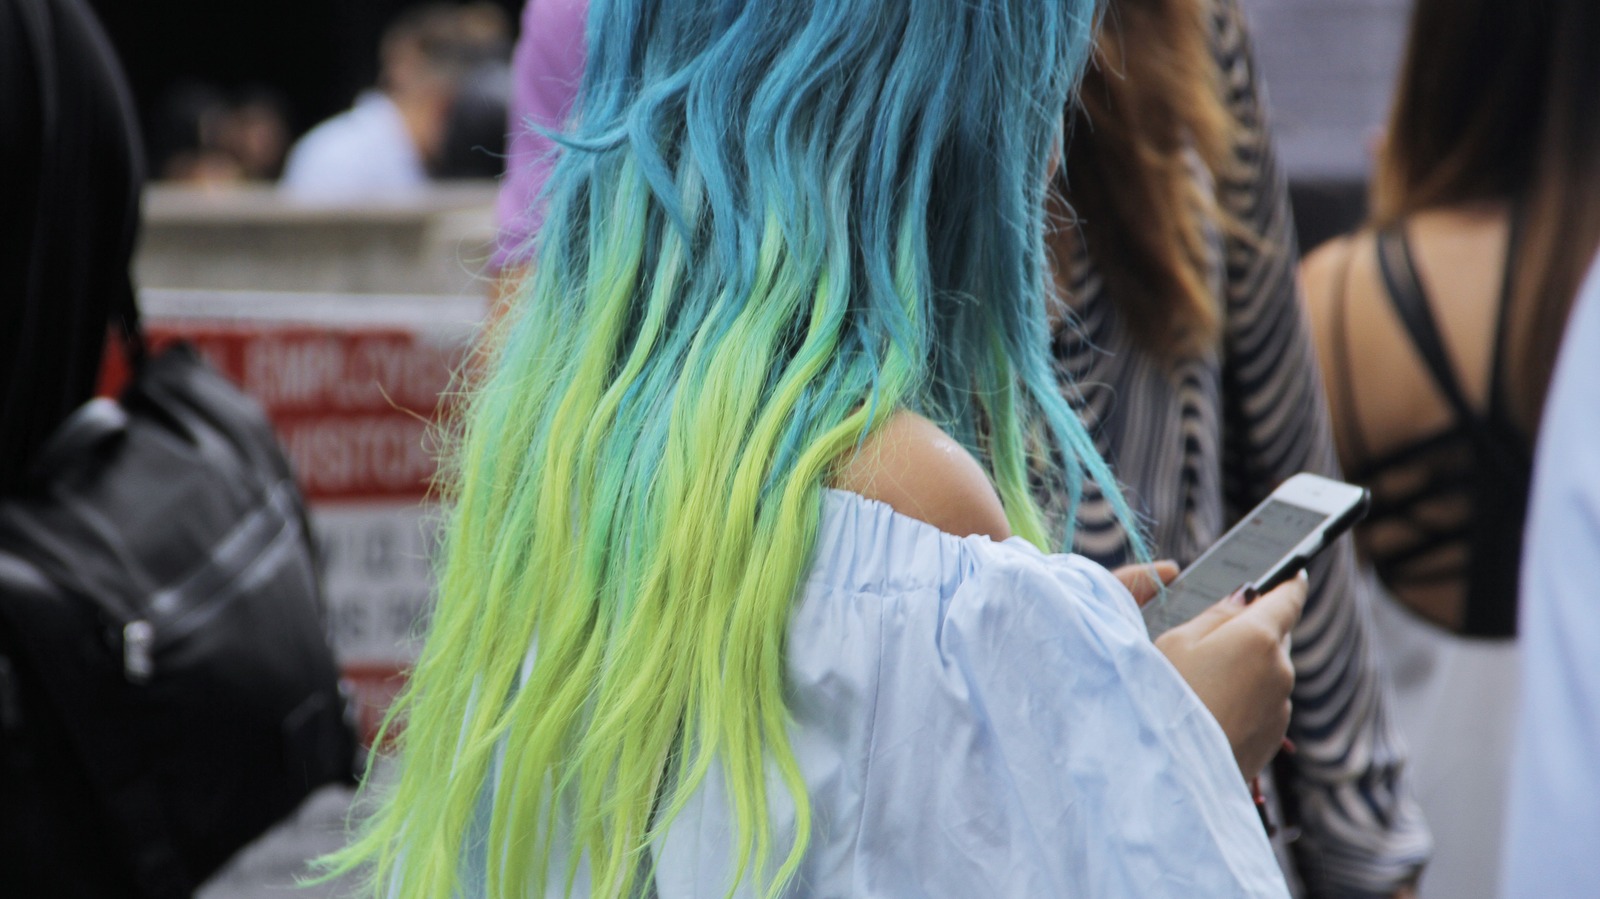 2. DIY Dip Dye Blue Hair Tutorial - wide 9